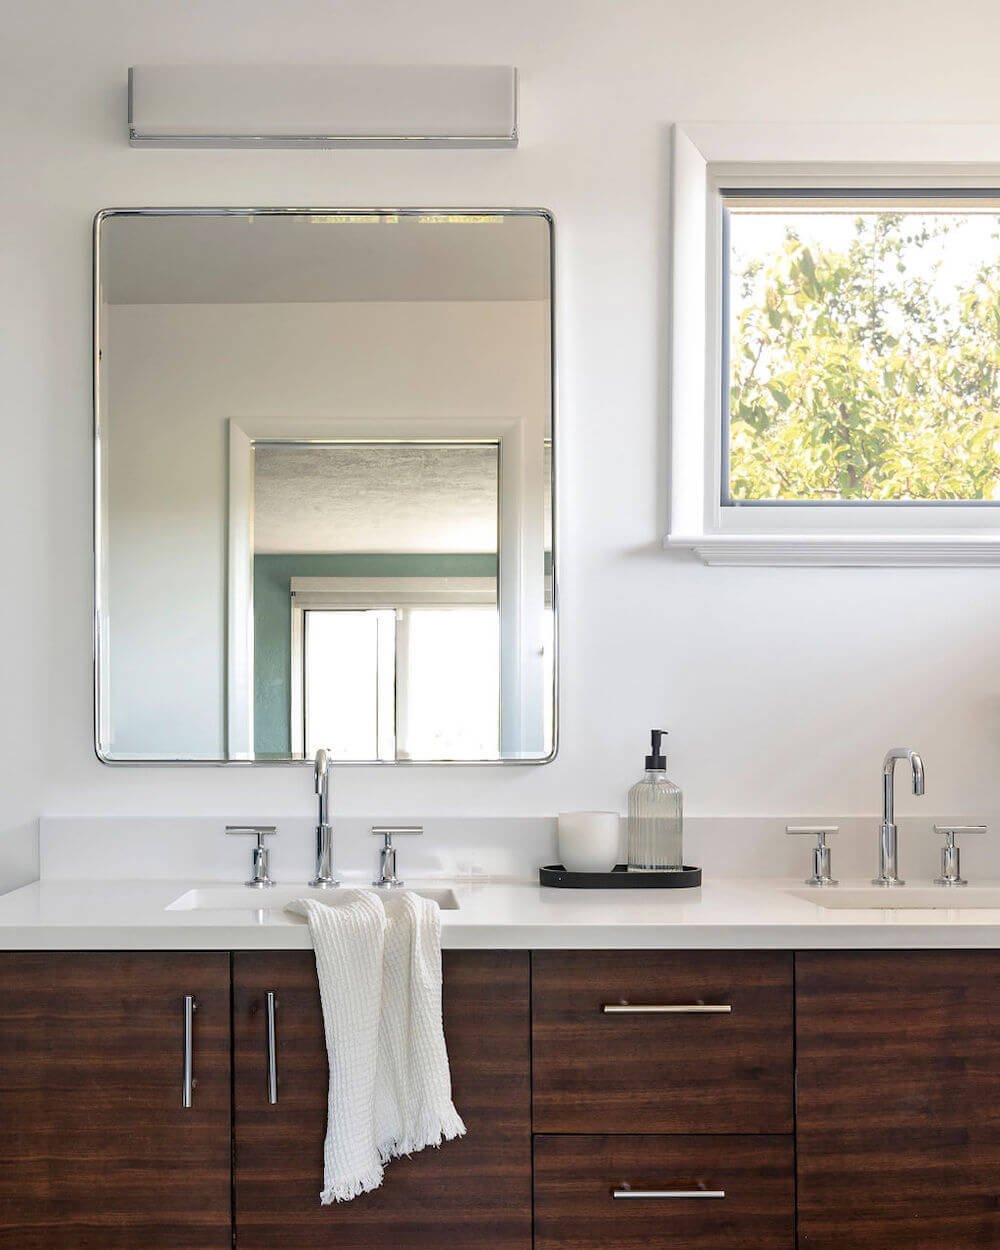 Sequoyah Oakland Bathroom Remodel - Bathroom Vanity 2.jpg